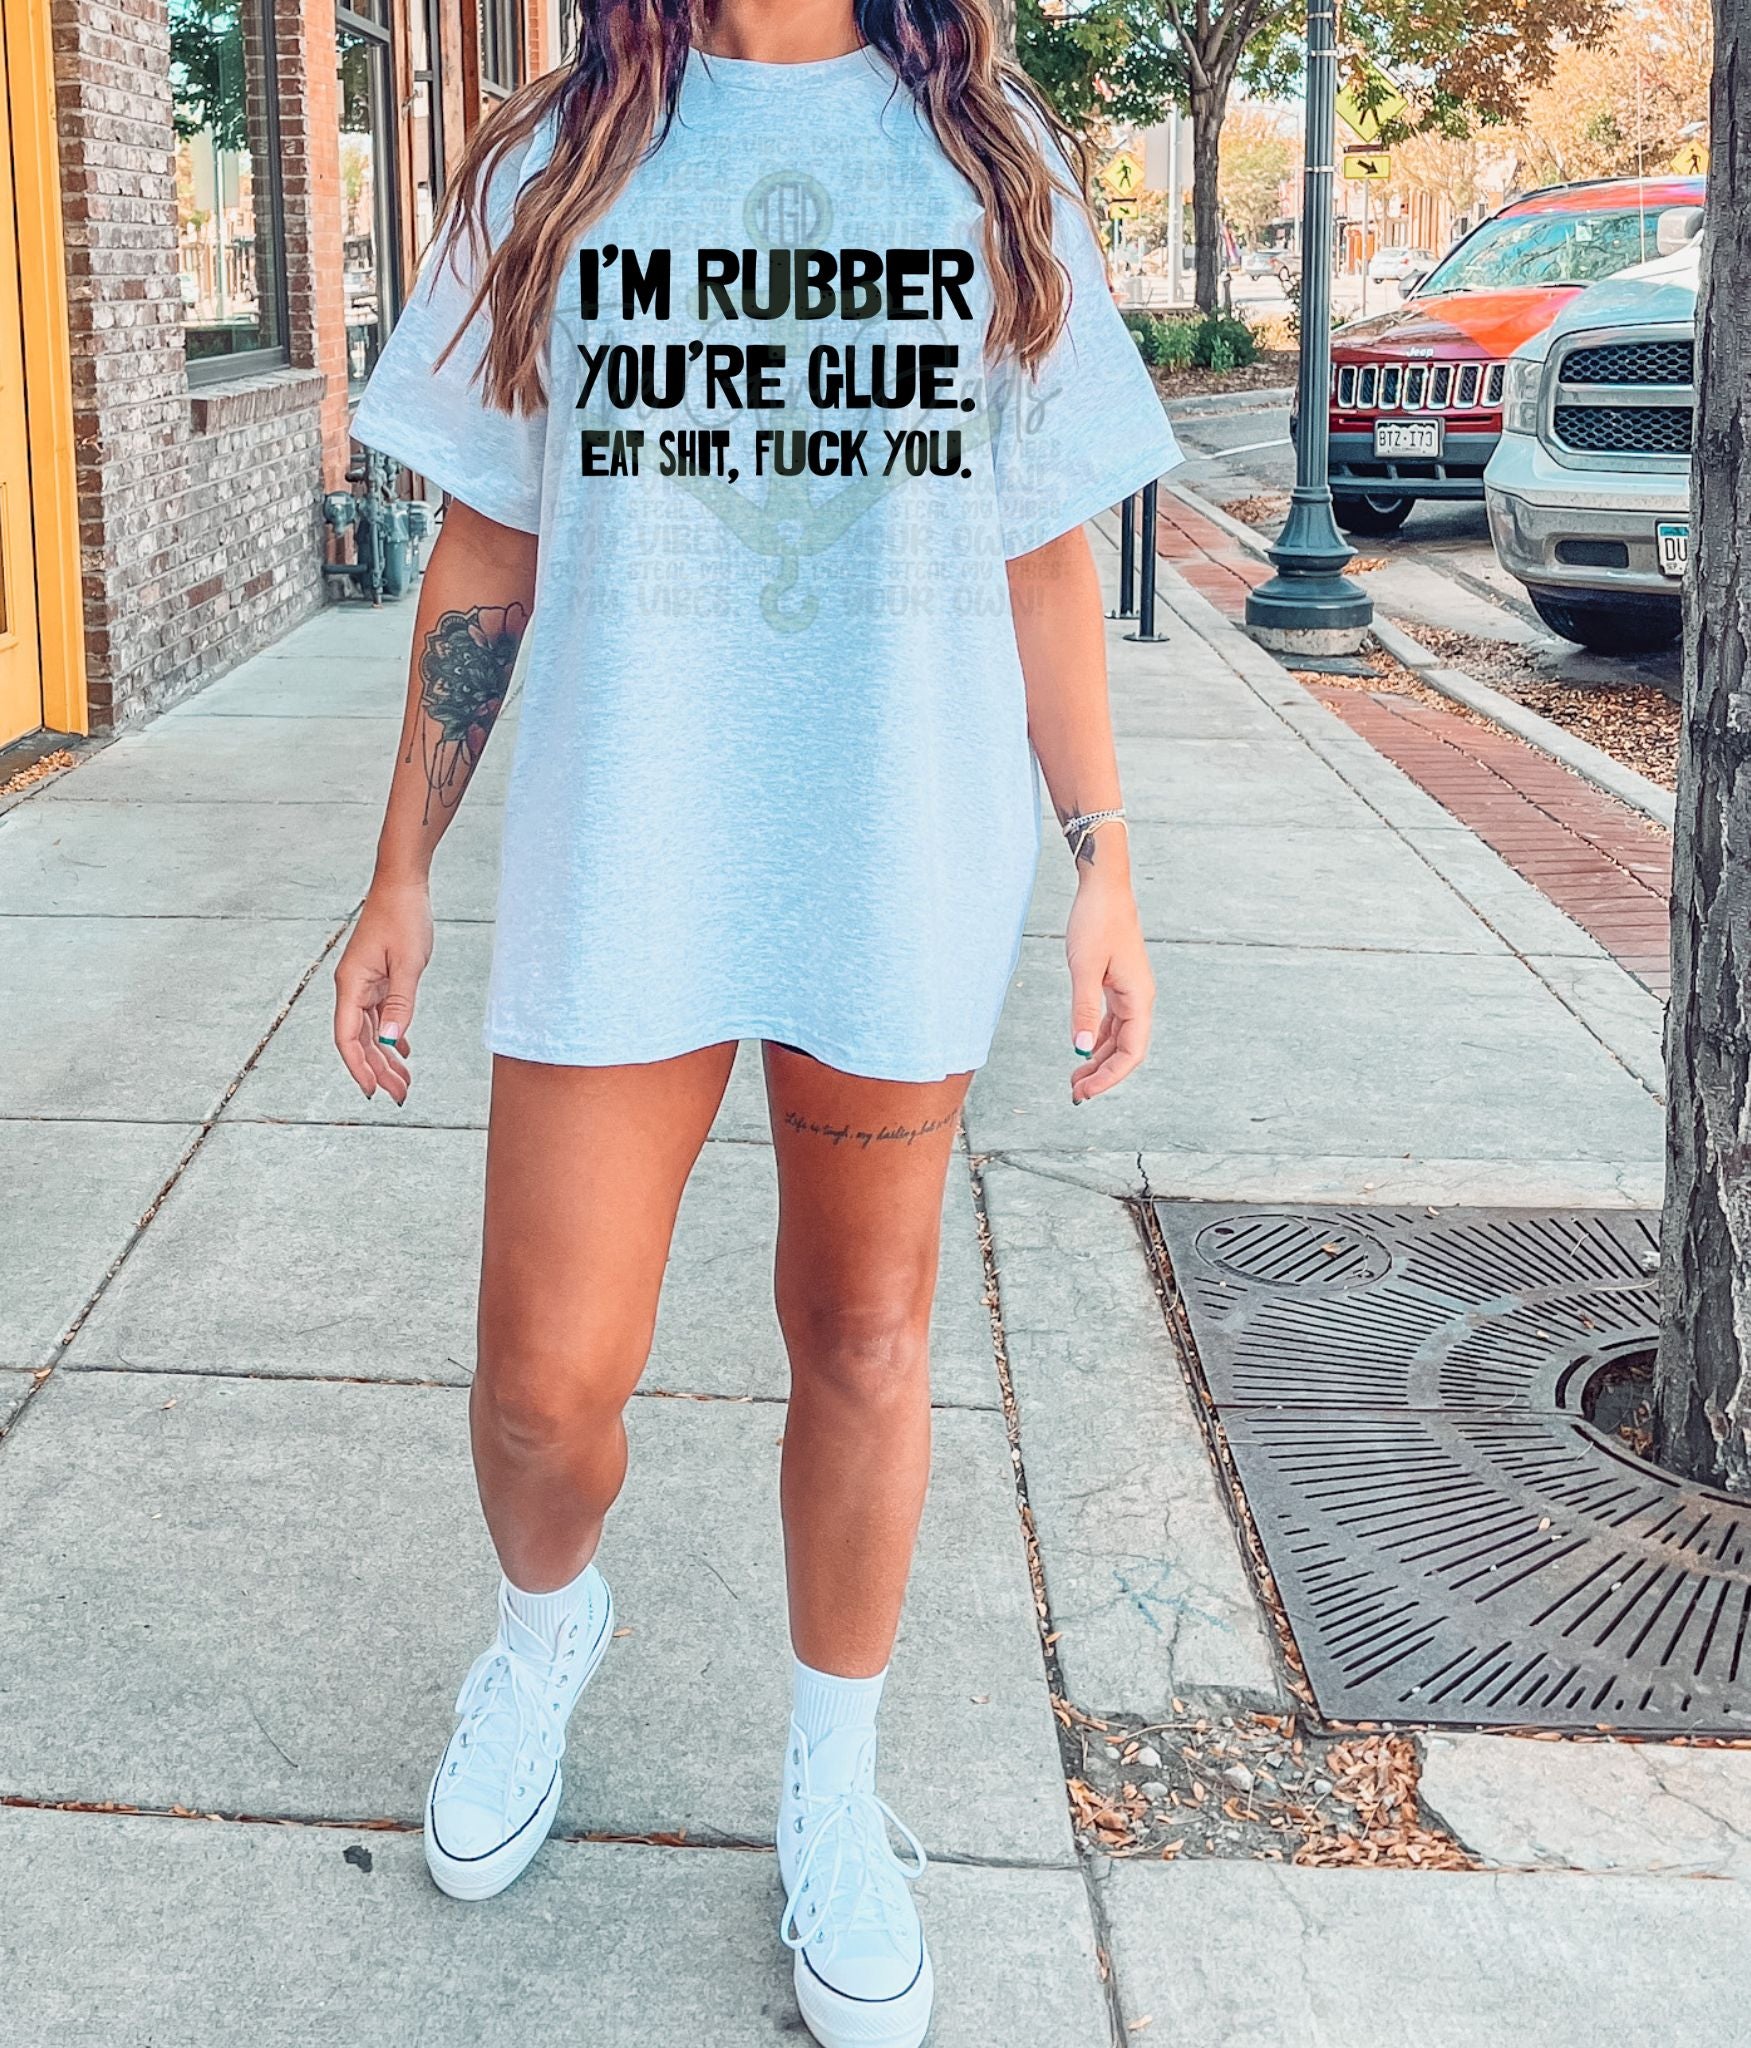 I'm Rubber You're Glue Top Design